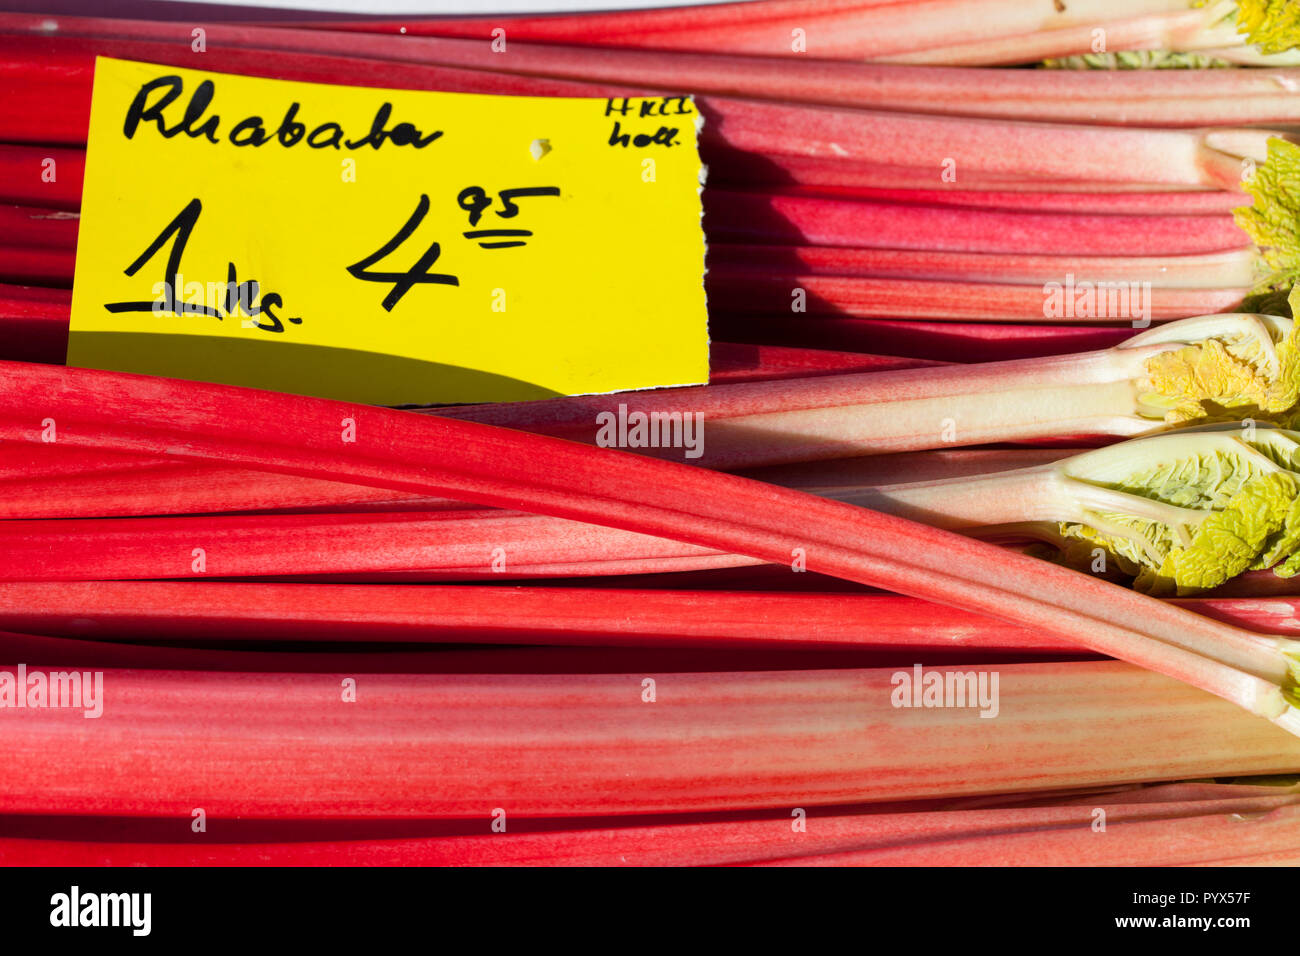 Red rhubarb with price tag on a market stall, Germany, Europe   I Roter Rhababer mit Preisschild auf einem Marktstand, Deutschland, Europa I Stock Photo